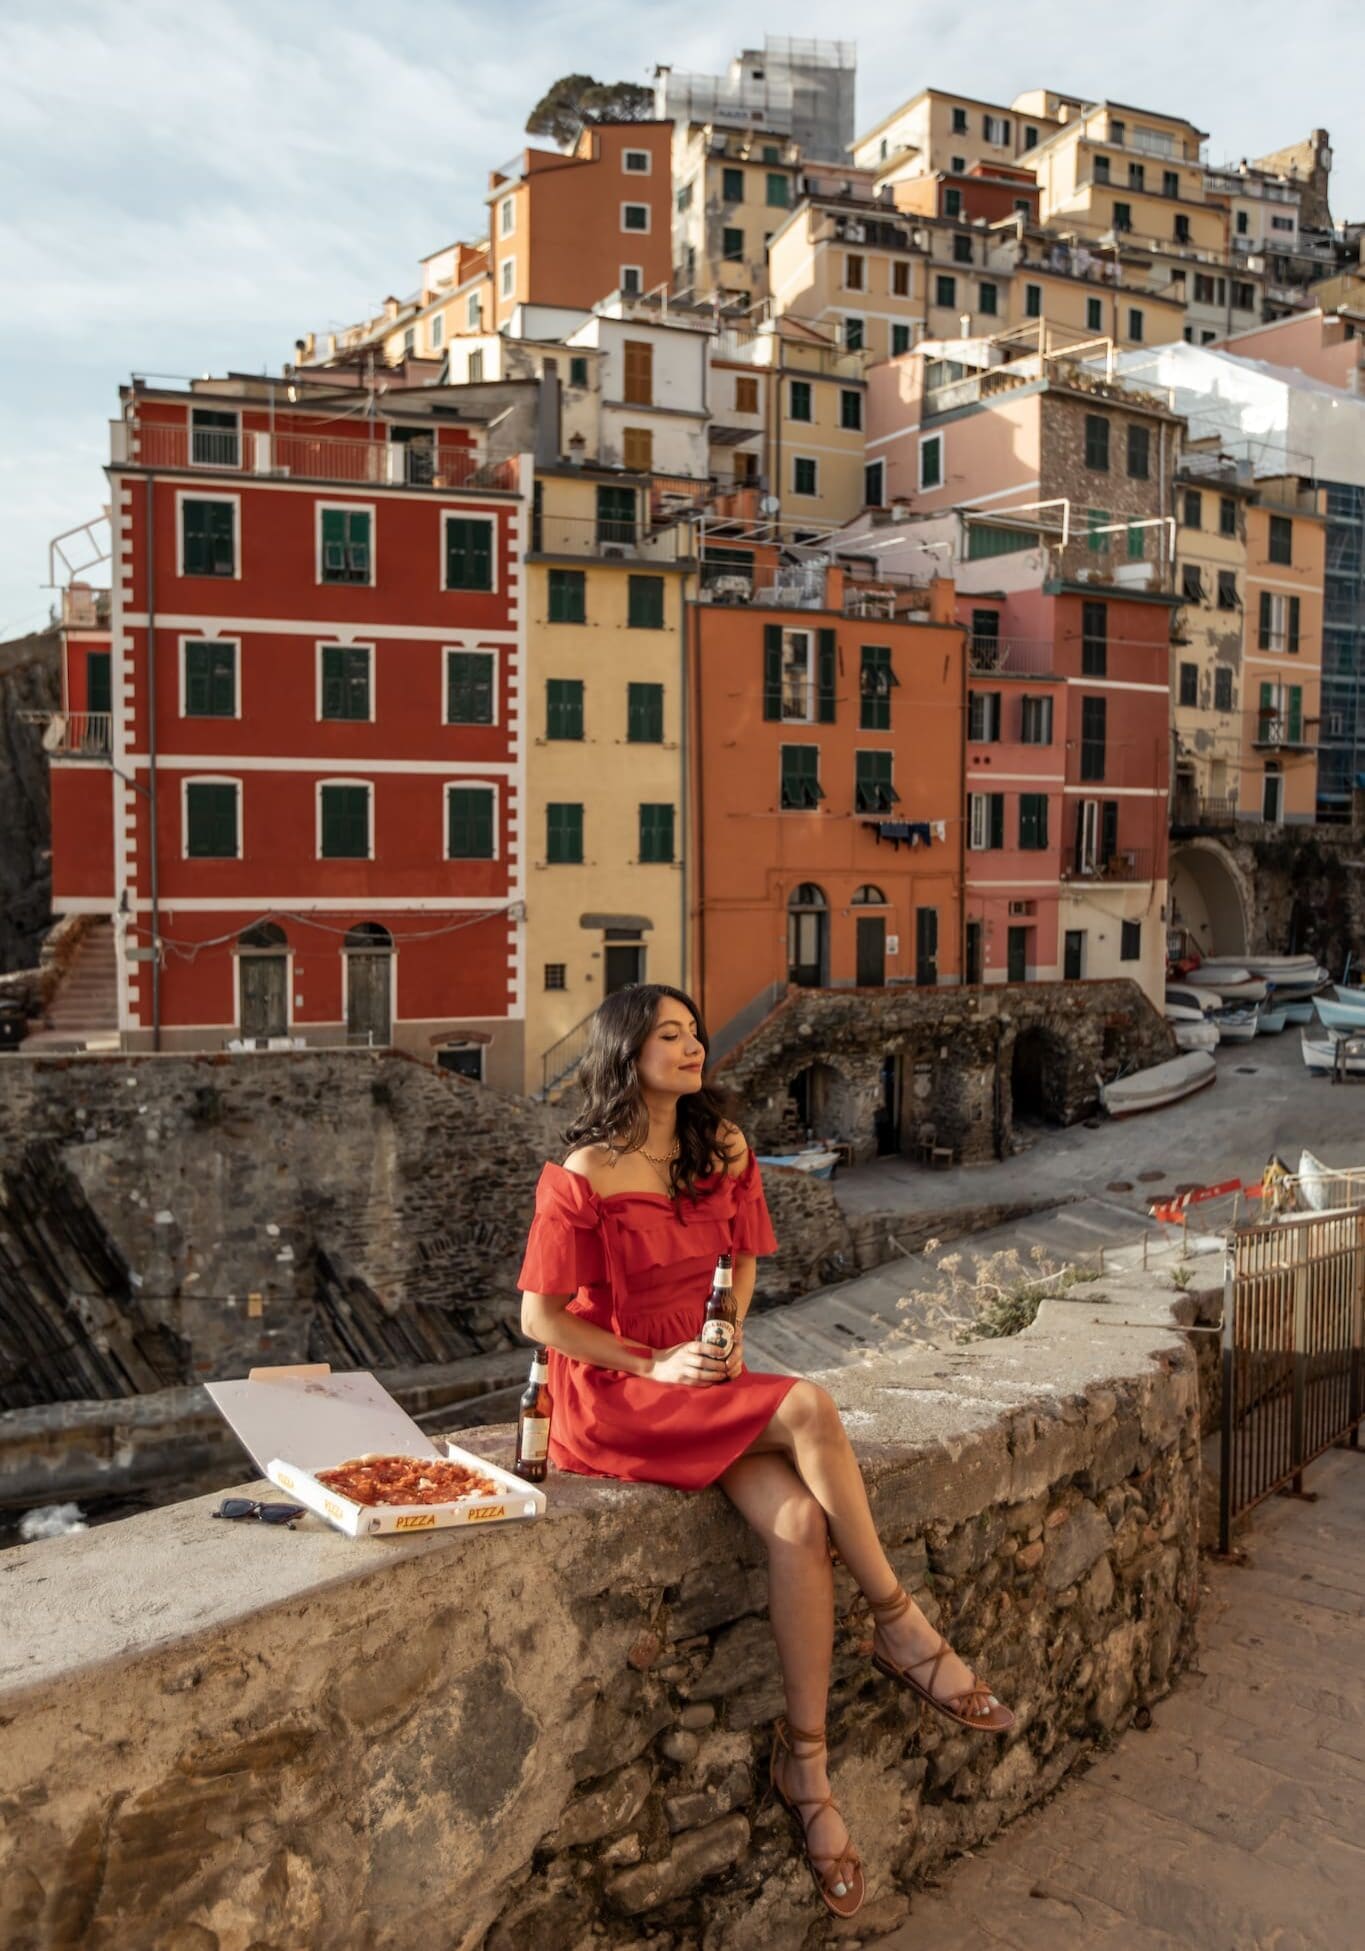 Riomaggiore Cinque Terre Photo Spots Instagram Locations